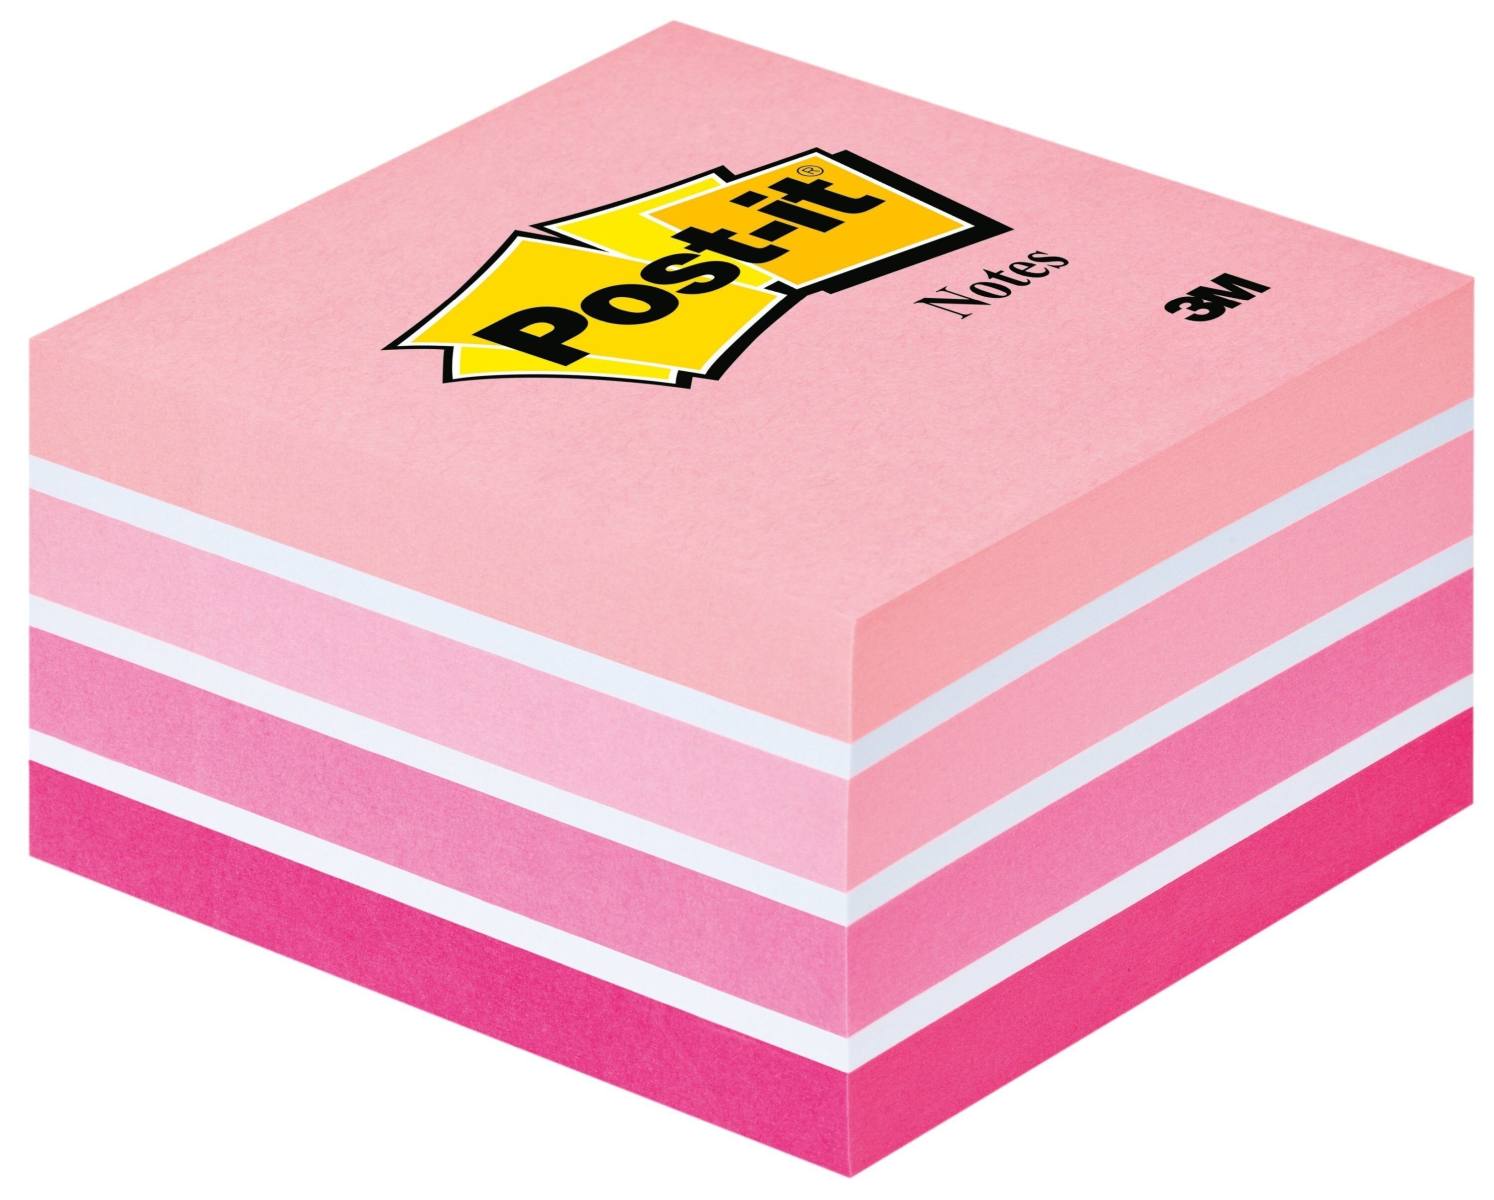 3M Post-it Würfel 2028P, 76 mm x 76 mm, Pastell-Pinktöne, 1 Würfel à 450 Blatt